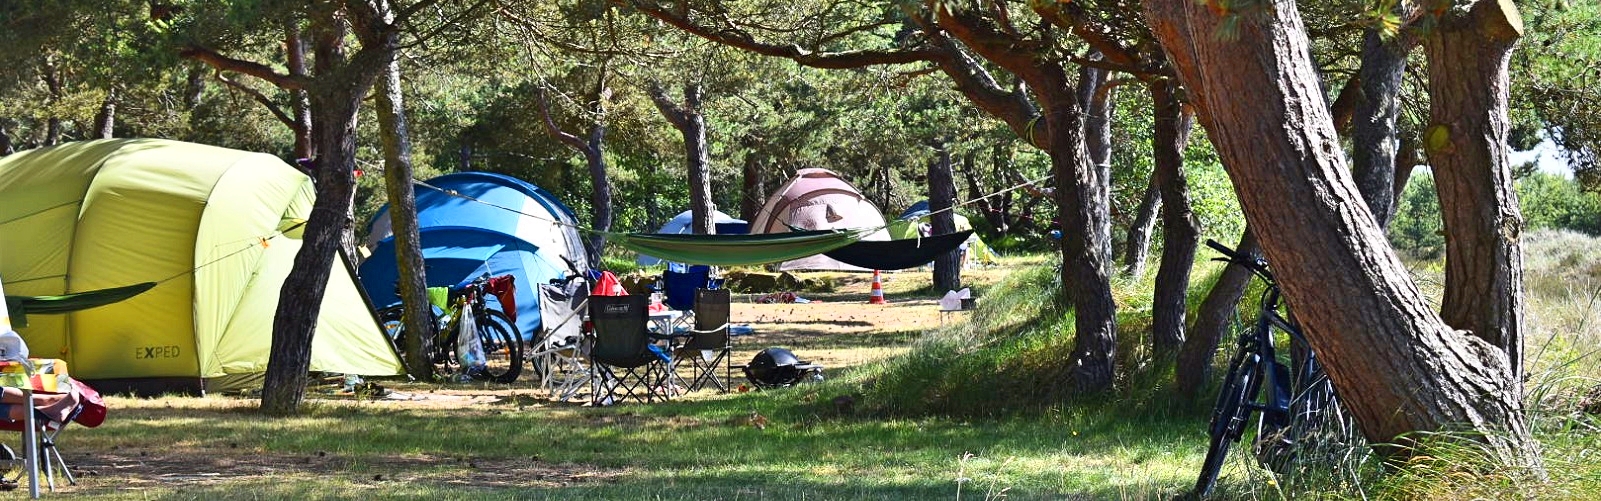 campingpladser på Bornholm